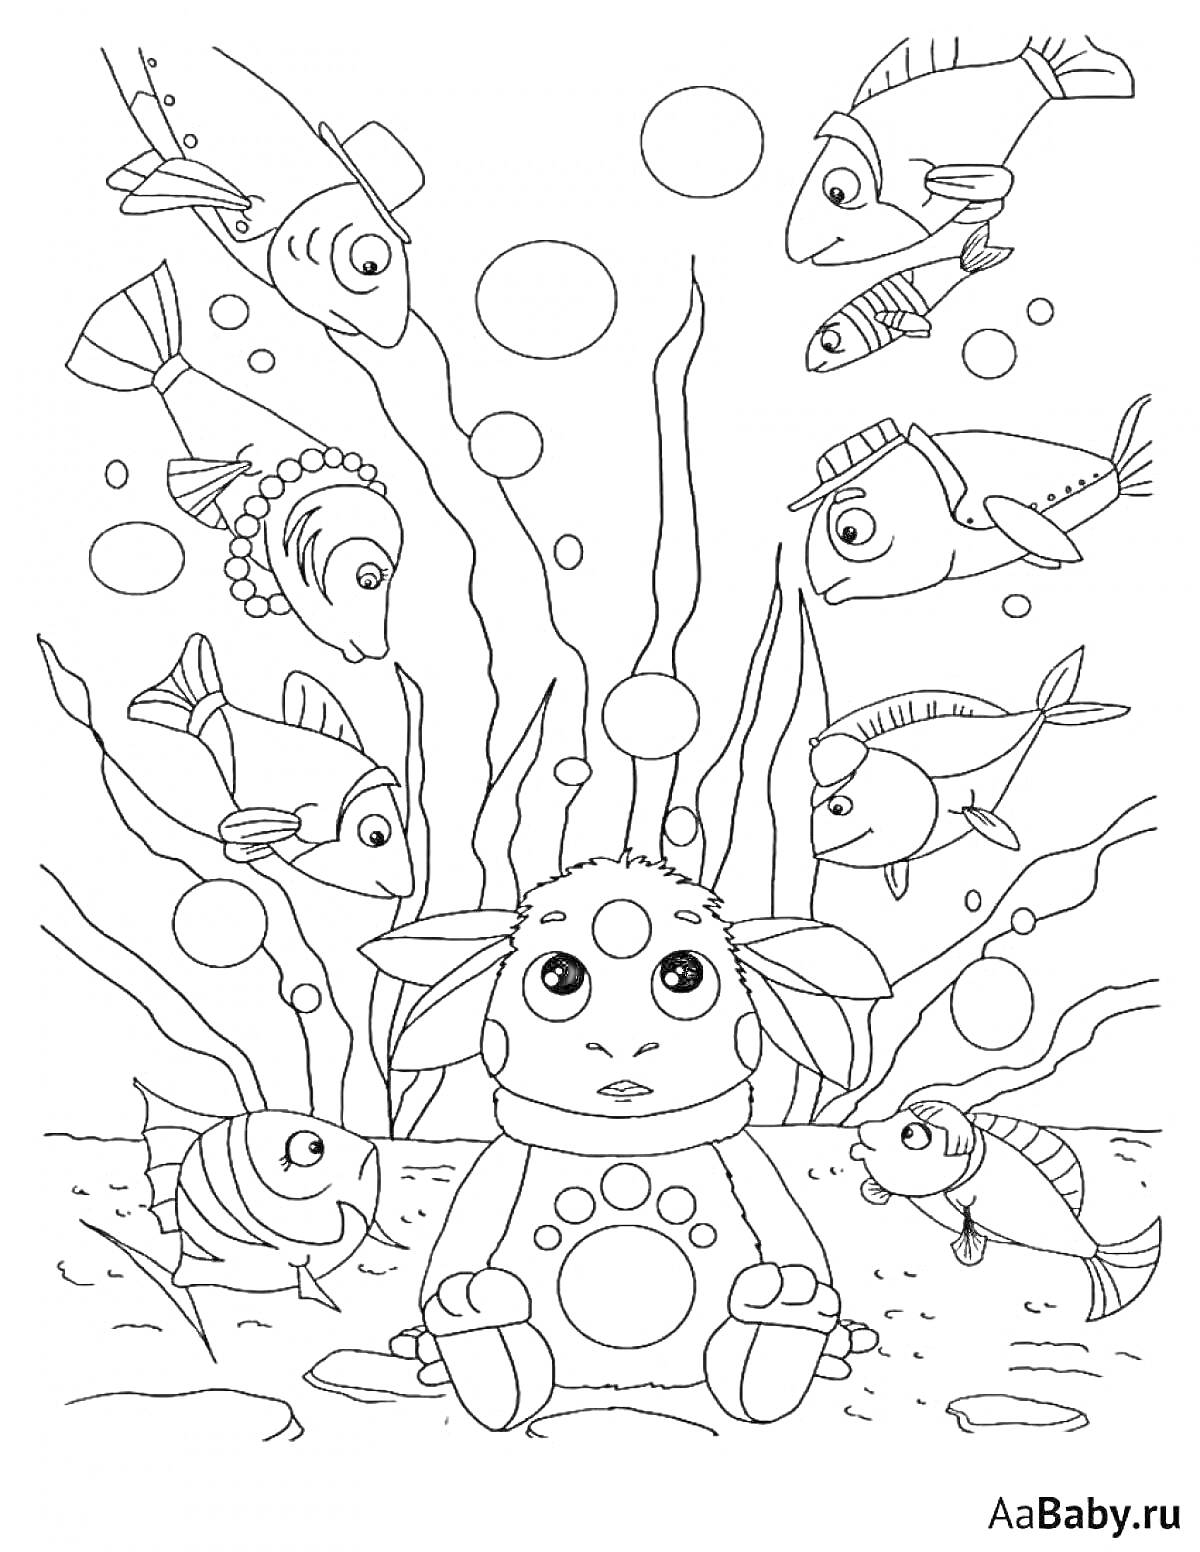 РаскраскаЛунтик и его друзья под водой с рыбами